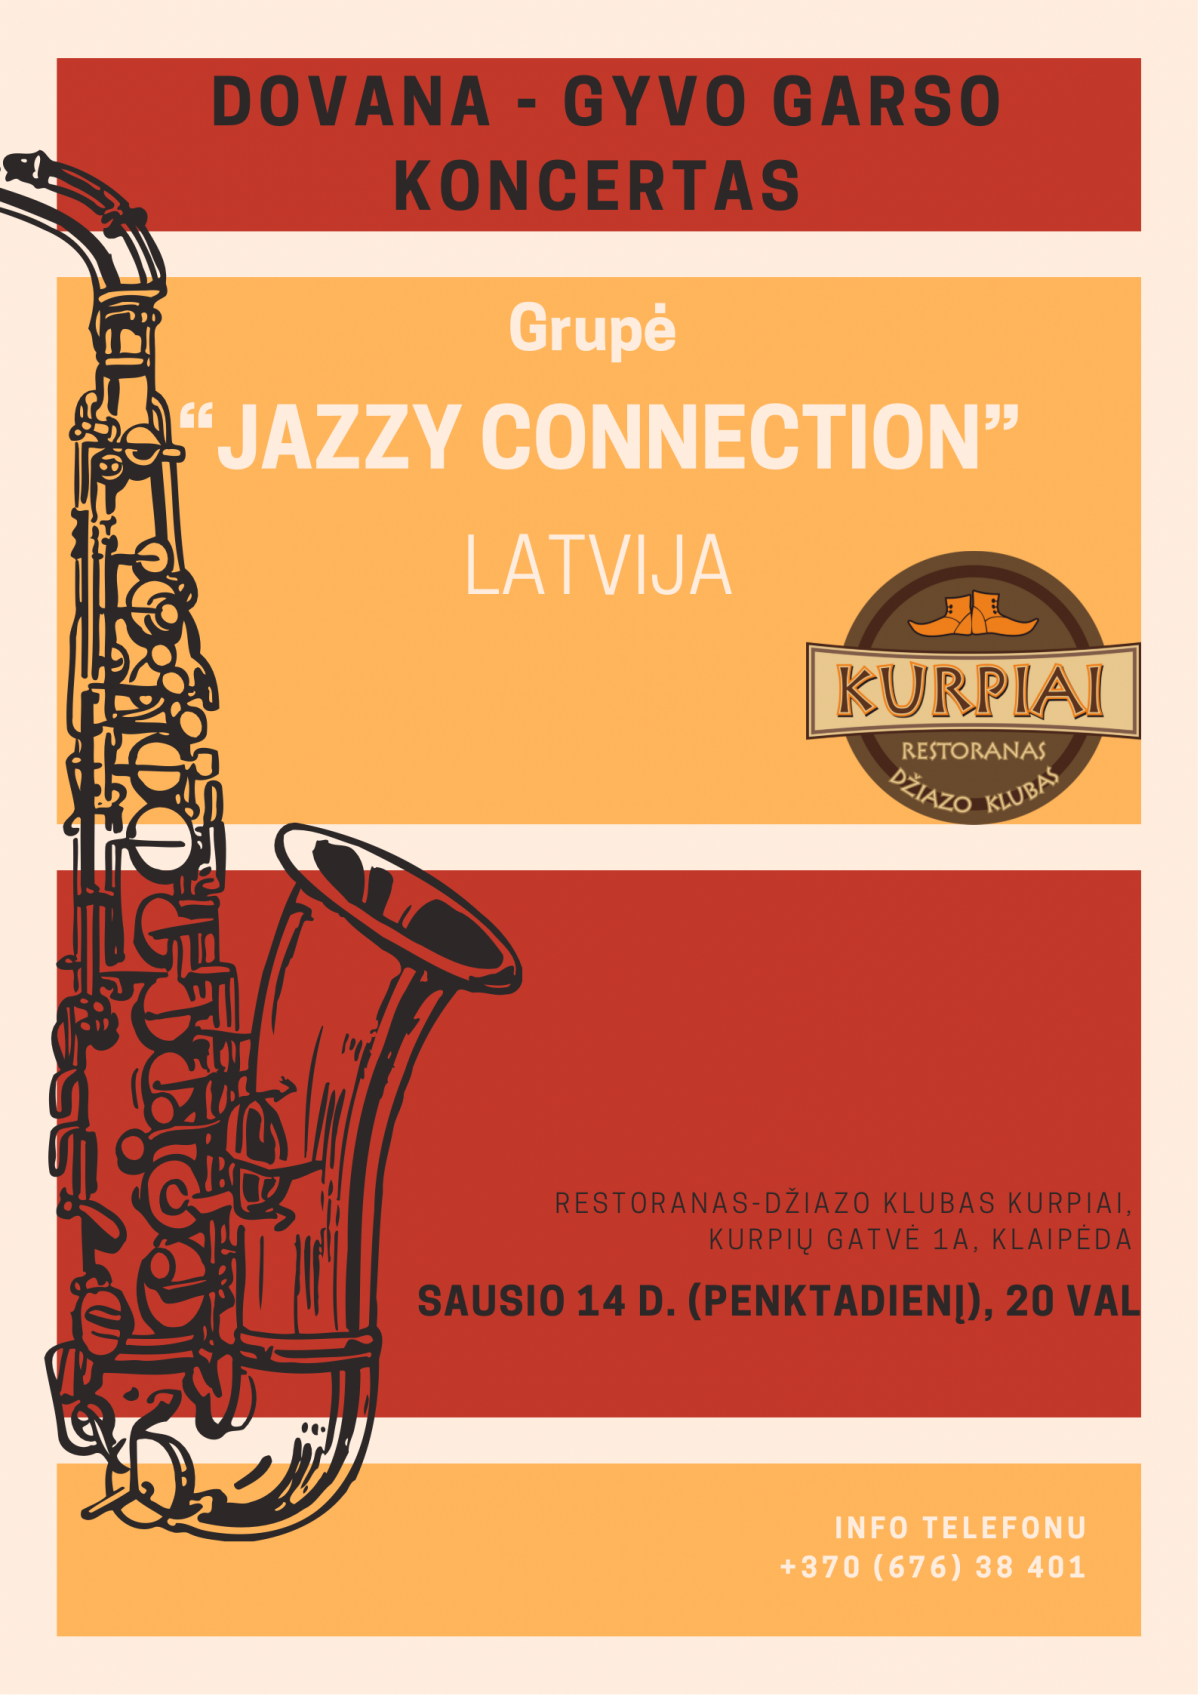 Gyvo garso koncertas - "Jazzy Connection" (Latvija)